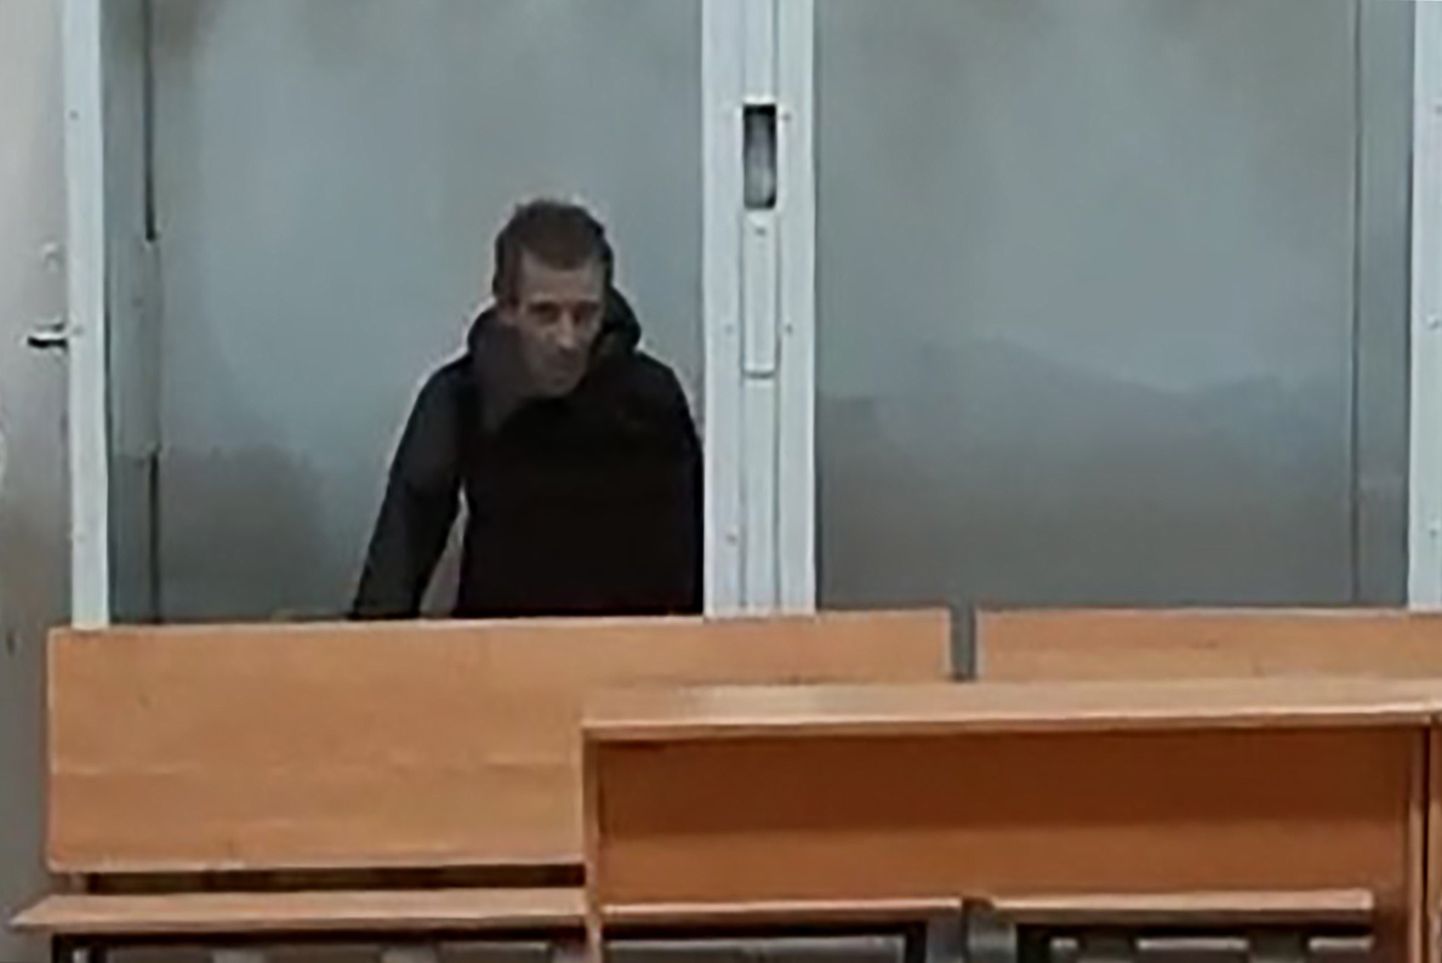 12. oktoober 2019 - Saratovi kohus arreteeris Mihhail Tuvatovi kahtlustusega Liza Kisjeljevi vägistamises ja mõrvas. 24. augustil 2020 mõisteti talle eluaegne vangistus.